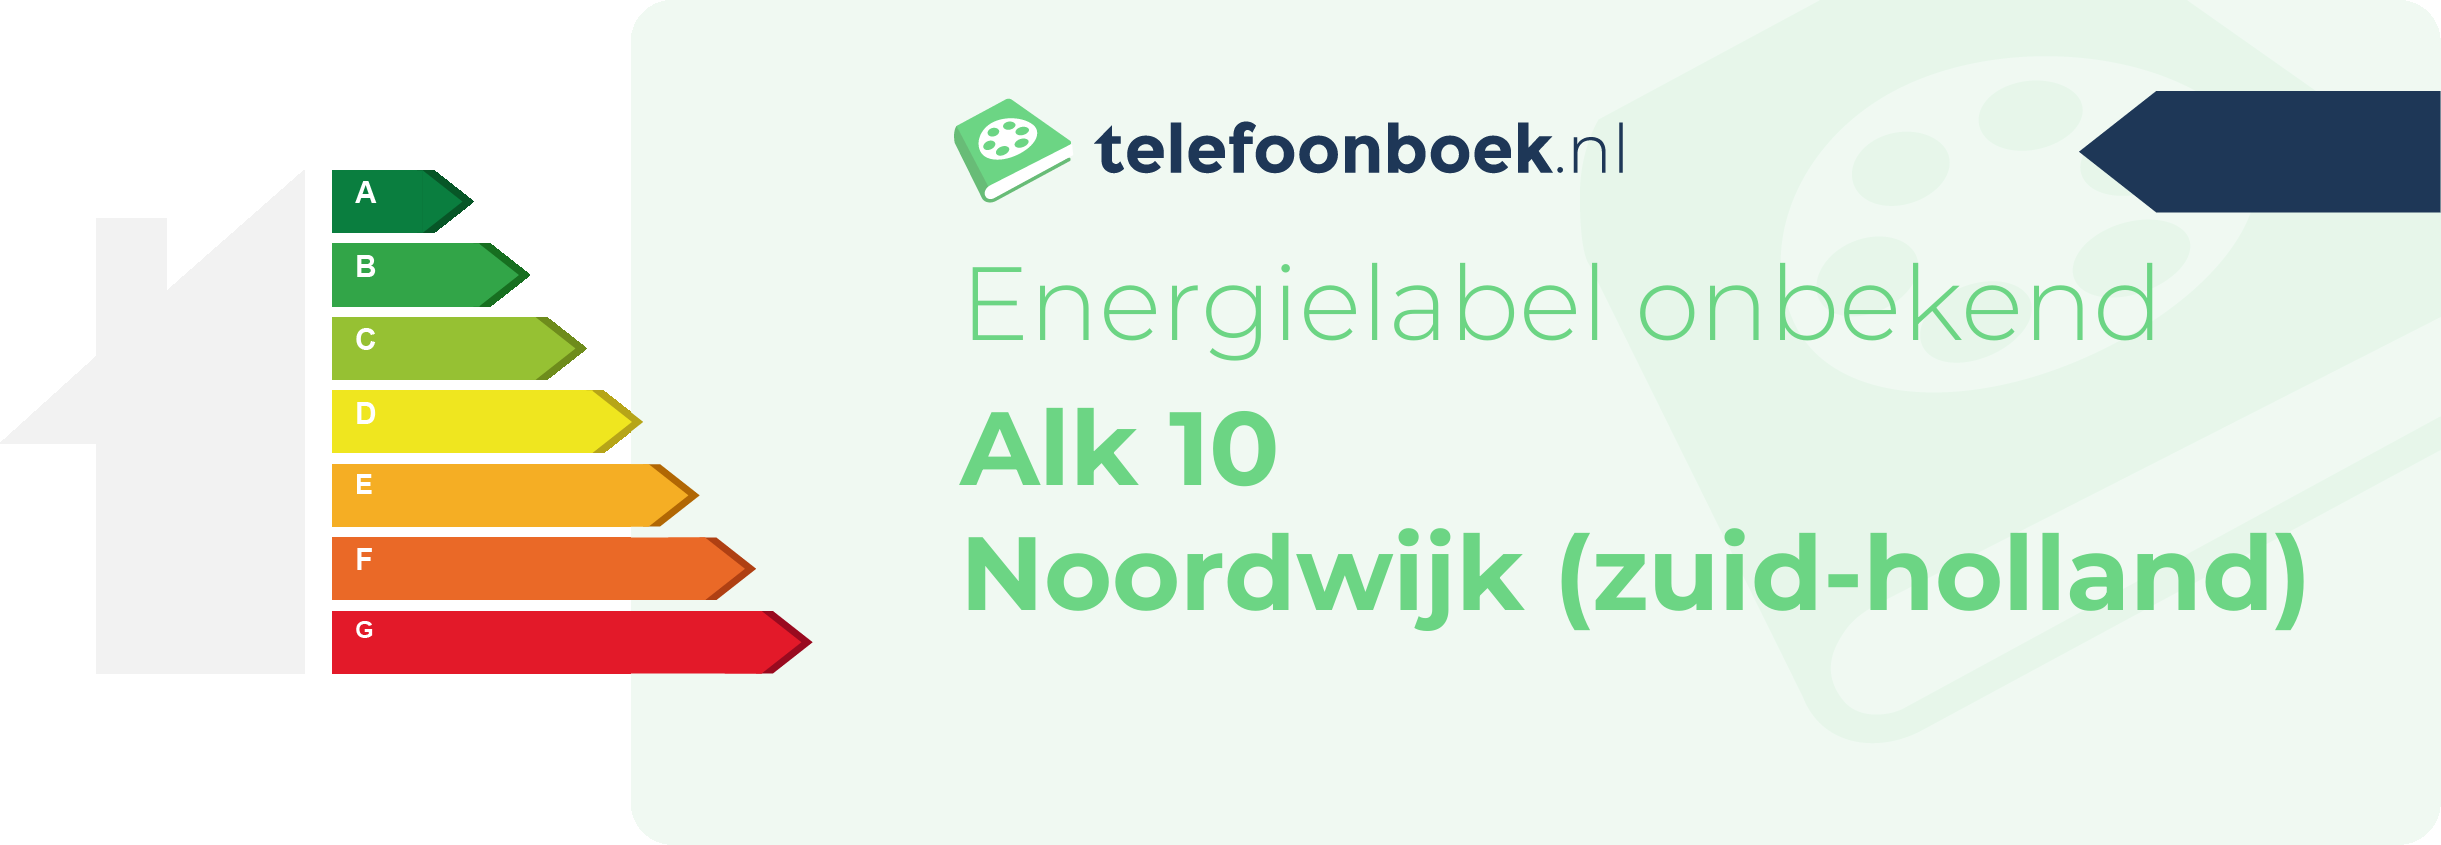 Energielabel Alk 10 Noordwijk (Zuid-Holland)